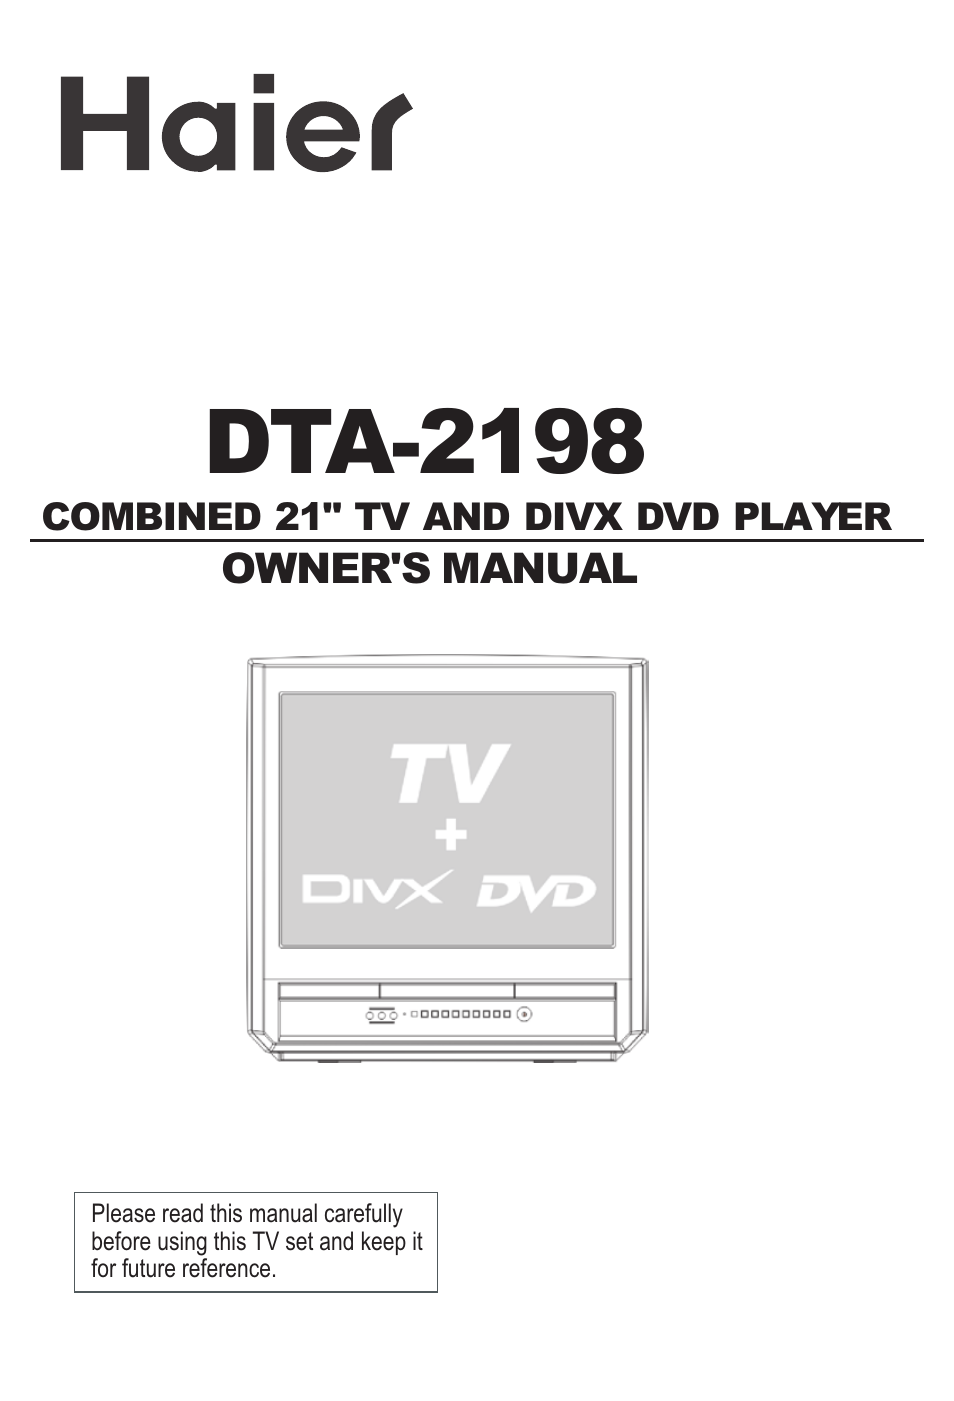 DTA-2198